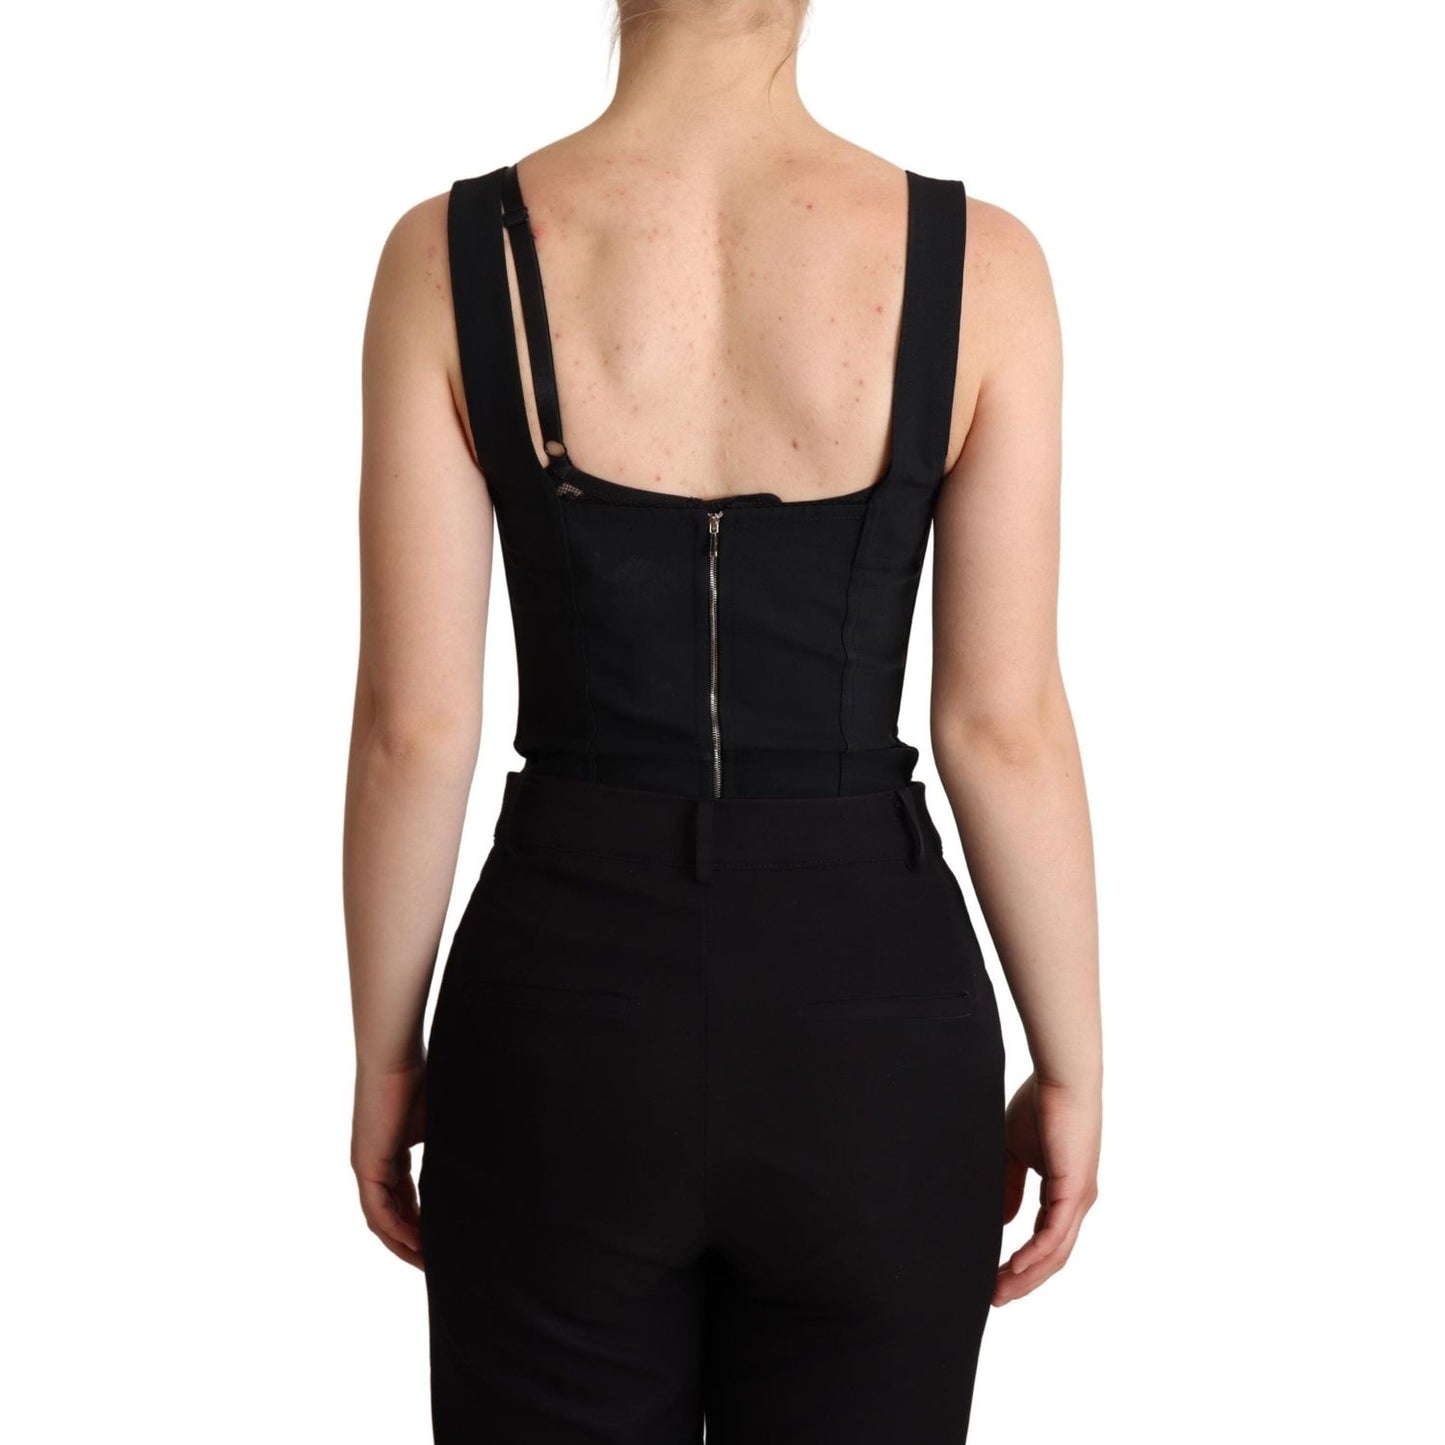 Dolce & Gabbana Elegant Black Lace Bodysuit Corset Dress Jeans & Pants black-floral-lace-bodysuit-hot-pants-dress